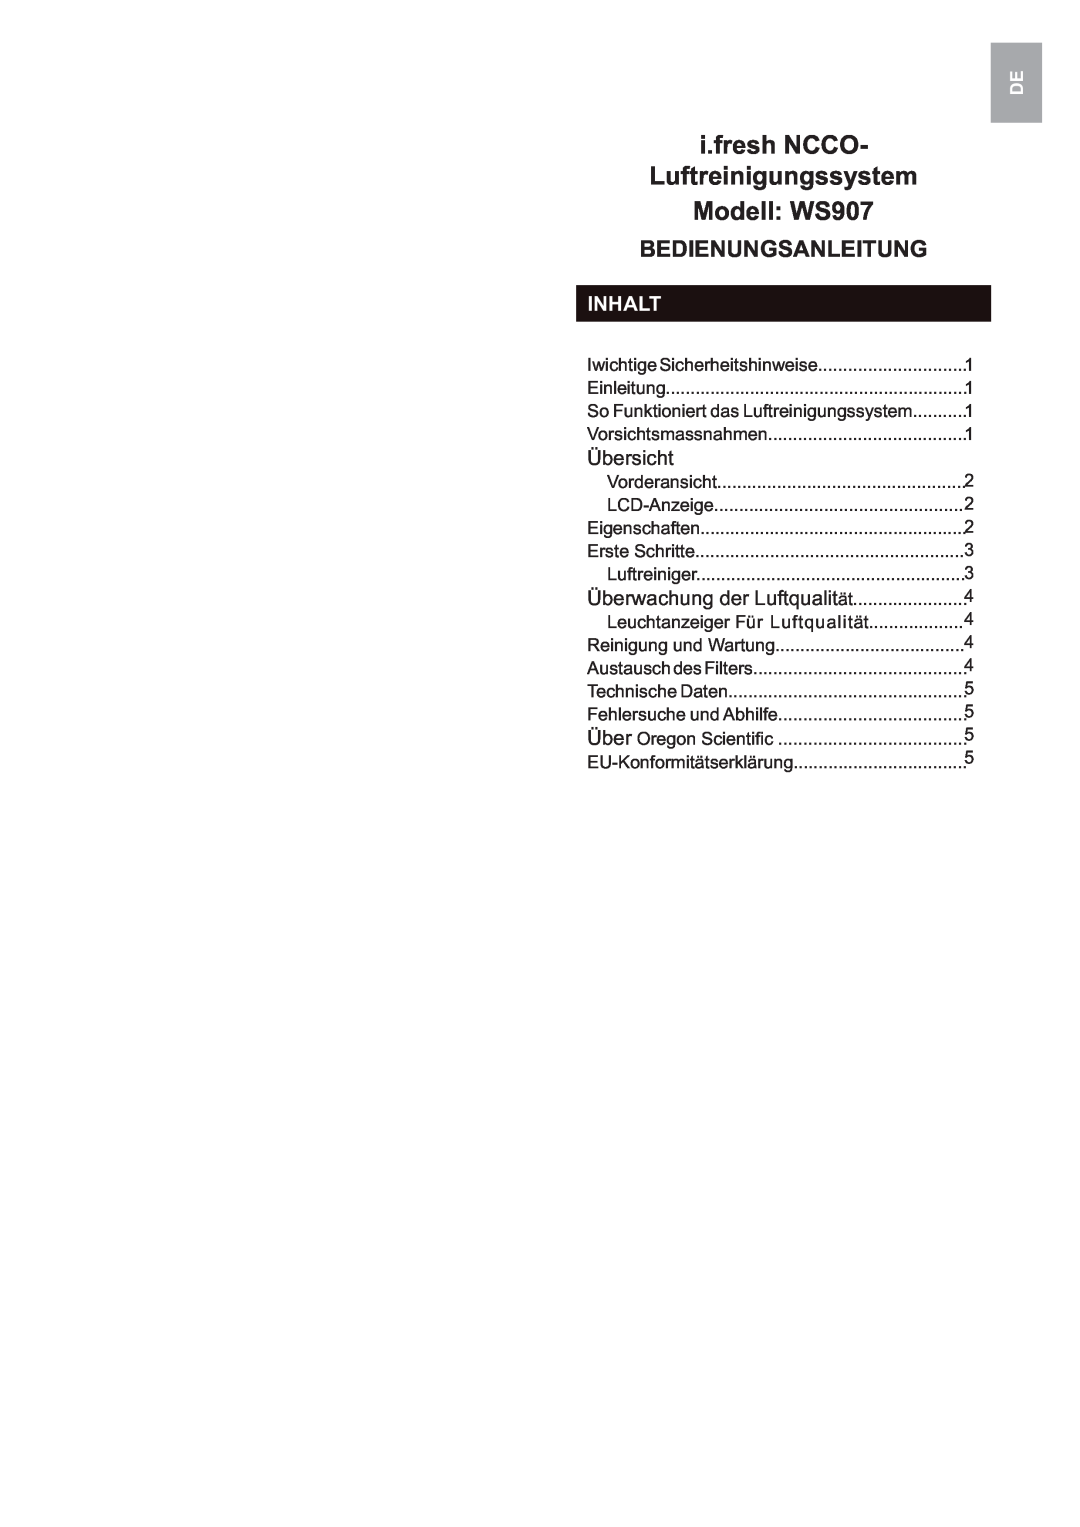 Oregon Scientific user manual i.fresh NCCO, Luftreinigungssystem, Modell: WS907, Bedienungsanleitung, Inhalt, Übersicht 